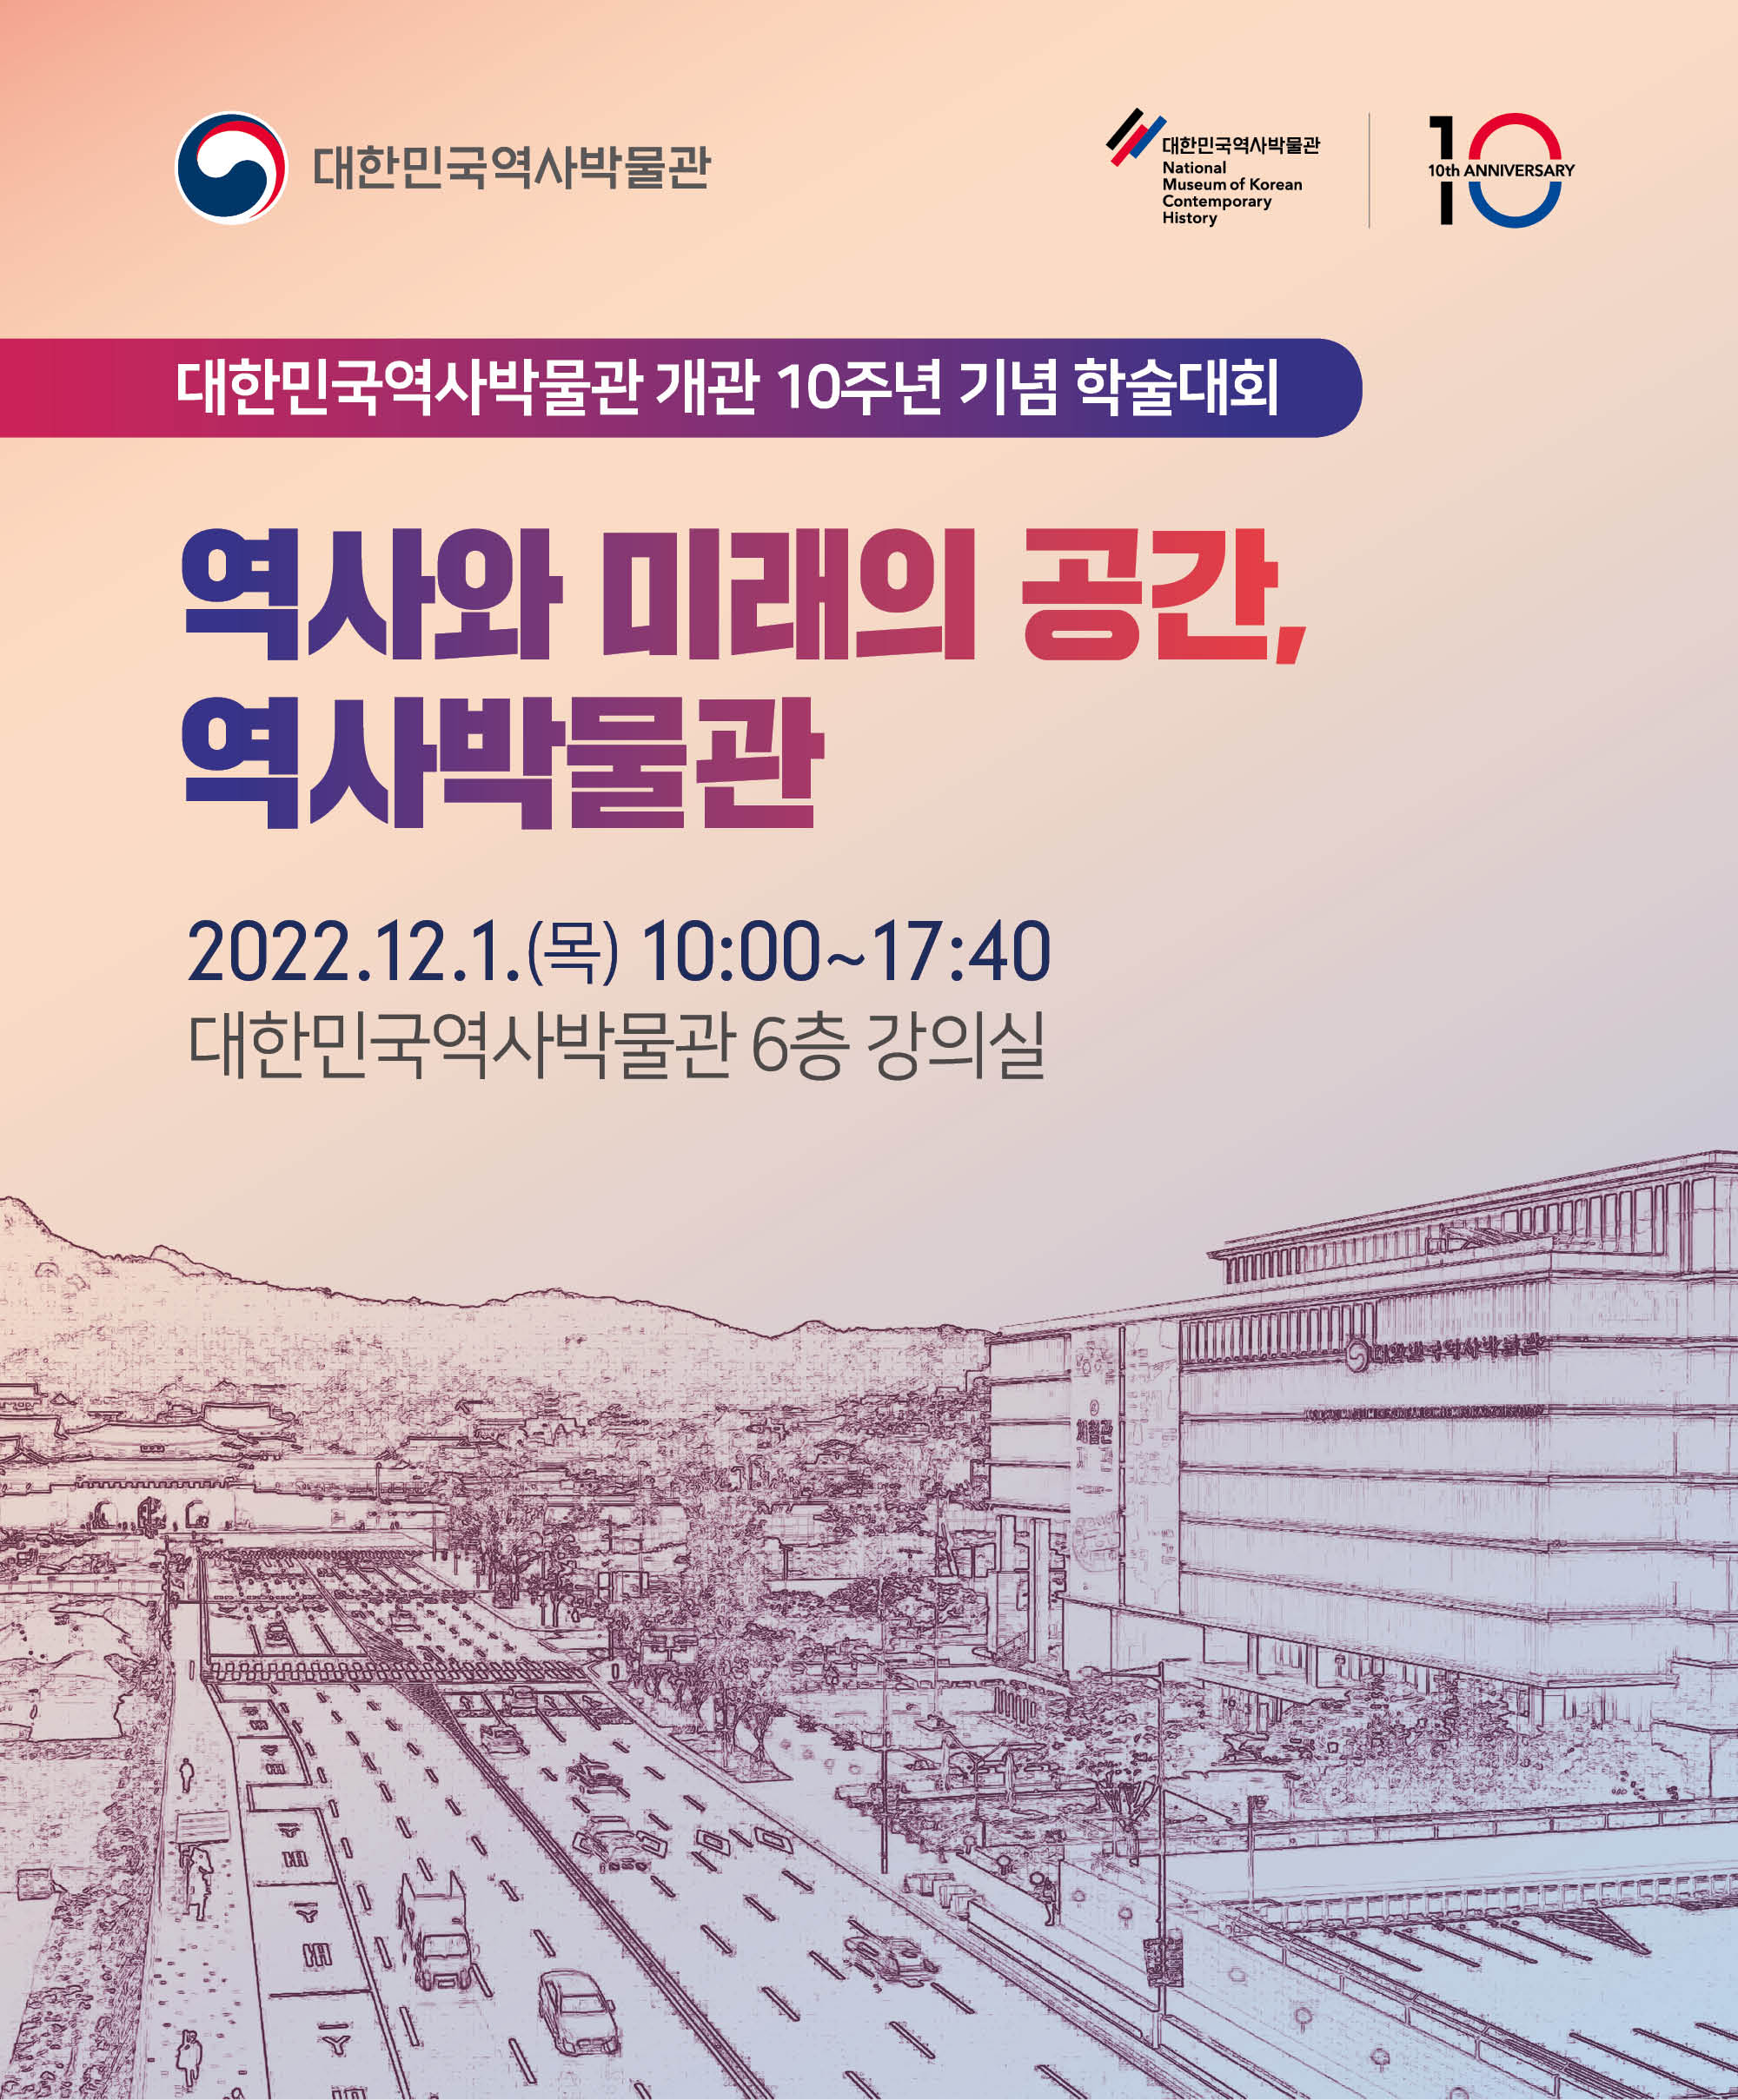 [행사안내] 대한민국역사박물관 개관 10주년 기념 학술대회 〈역사와 미래의 공간, 역사박물관〉